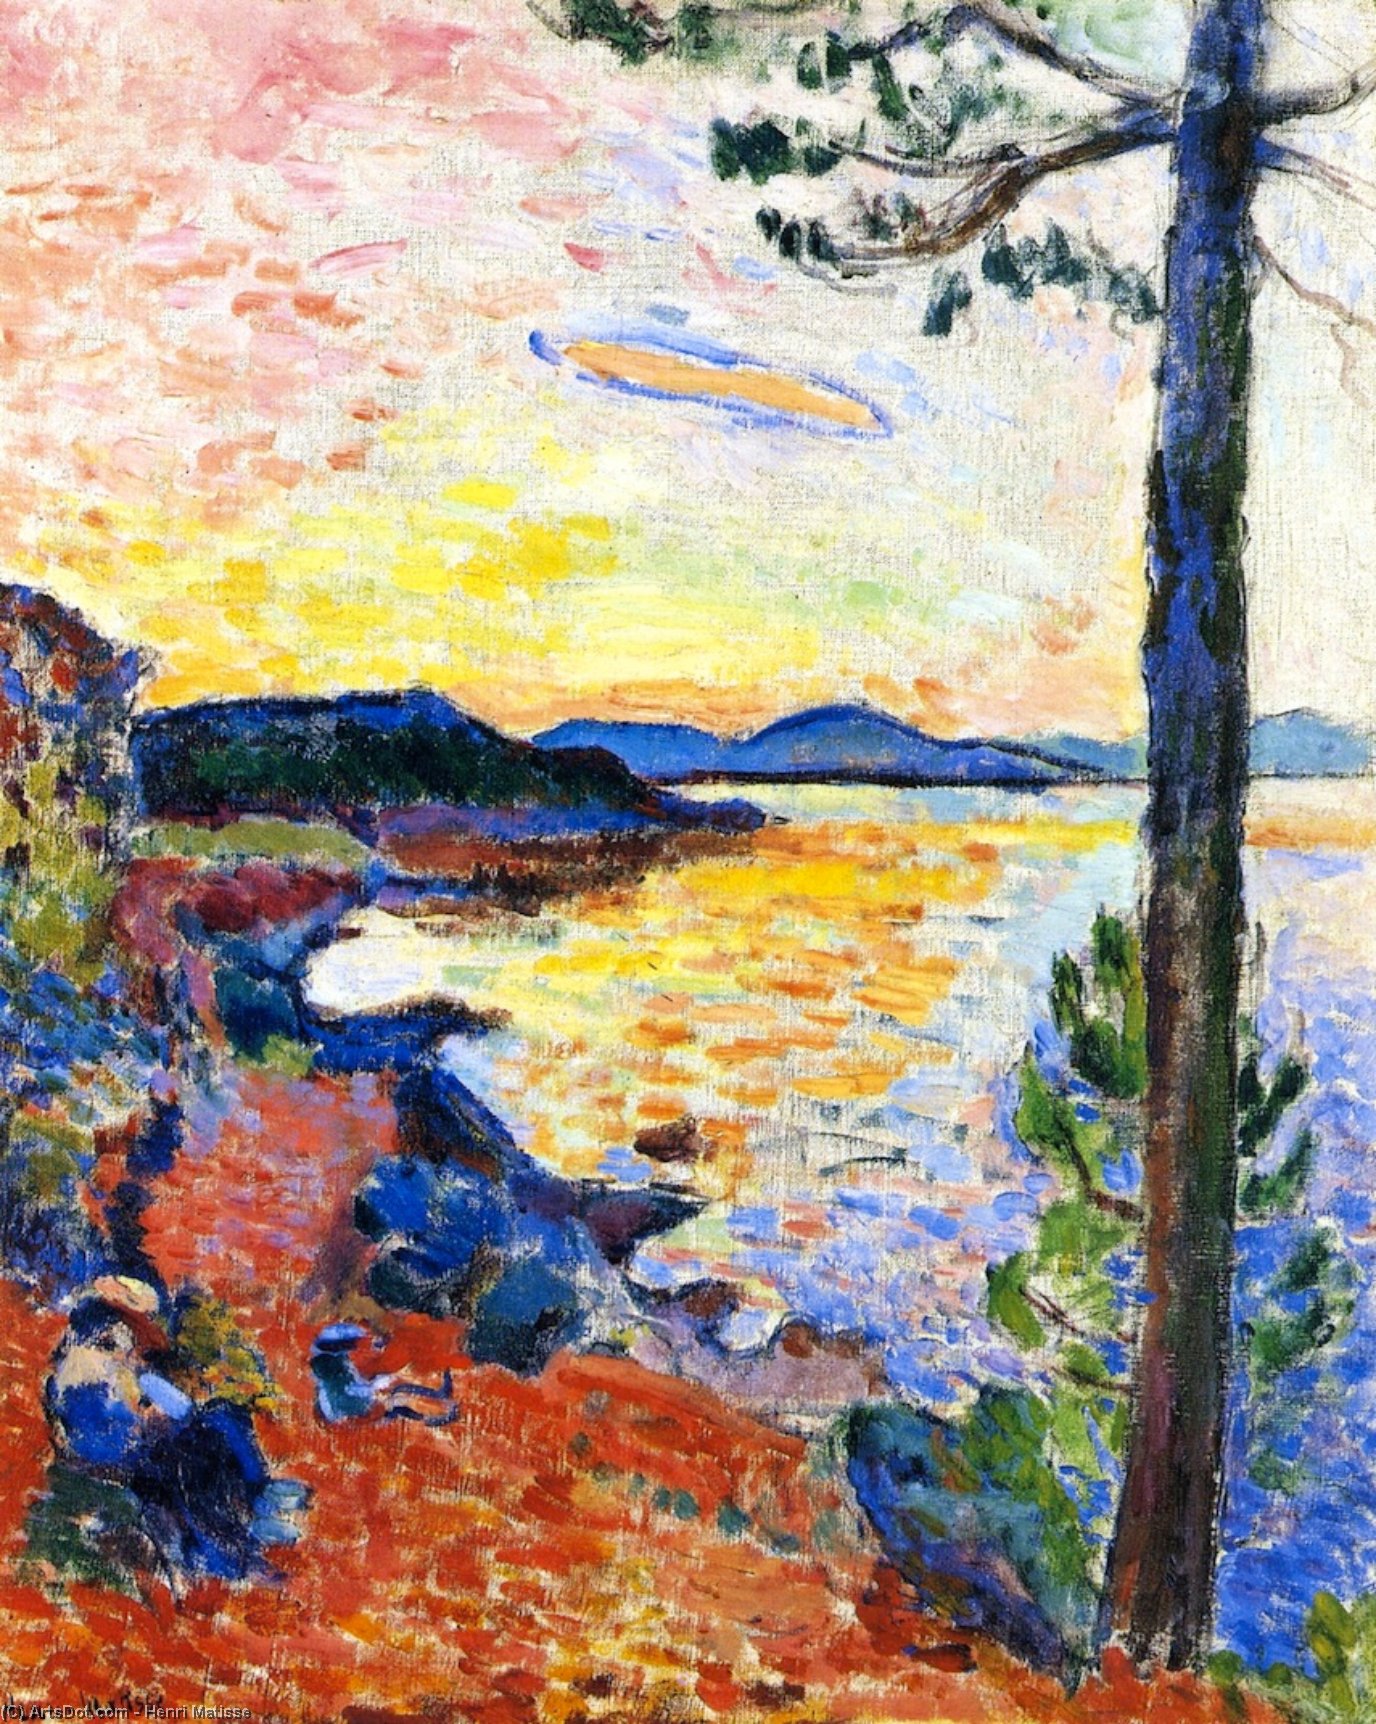 Acheter Reproductions D'art De Musée Snack (également connu sous le nom de Golf de Saint-Tropez), 1904 de Henri Matisse (Inspiré par) (1869-1954, France) | ArtsDot.com